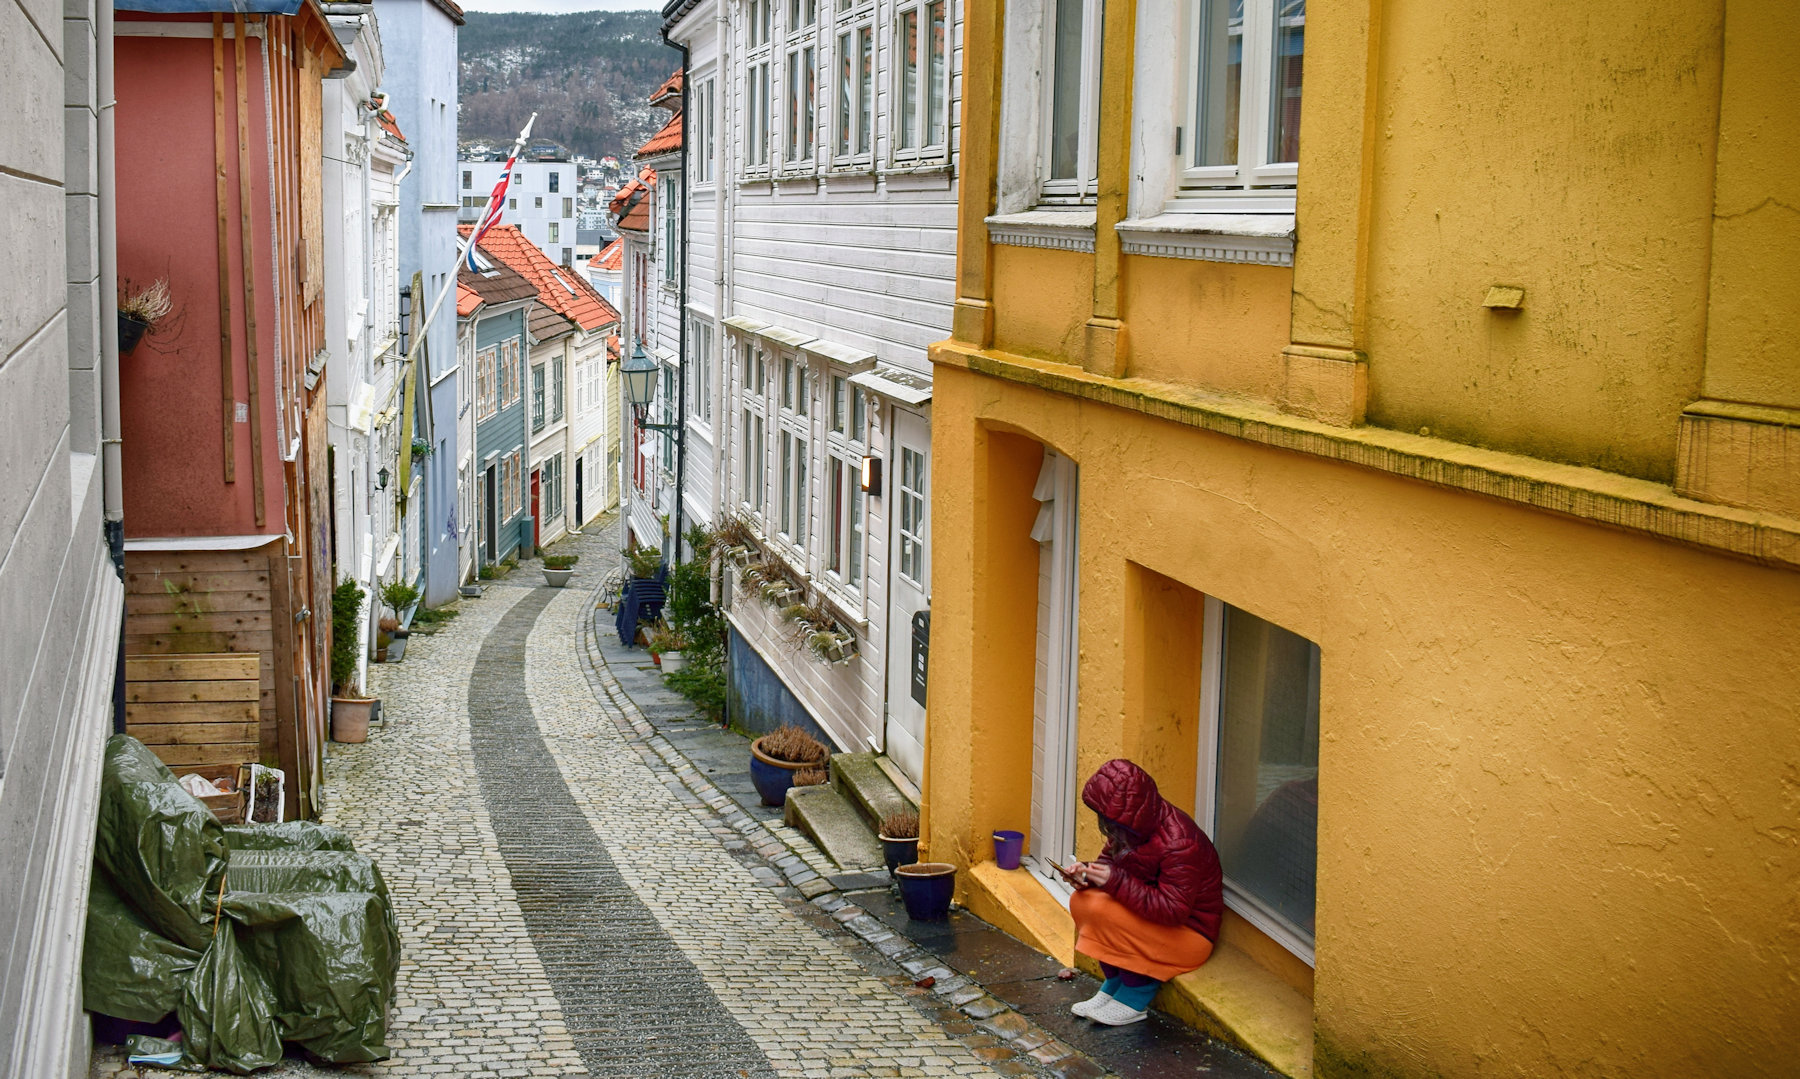 Altre case multicolori a Bergen